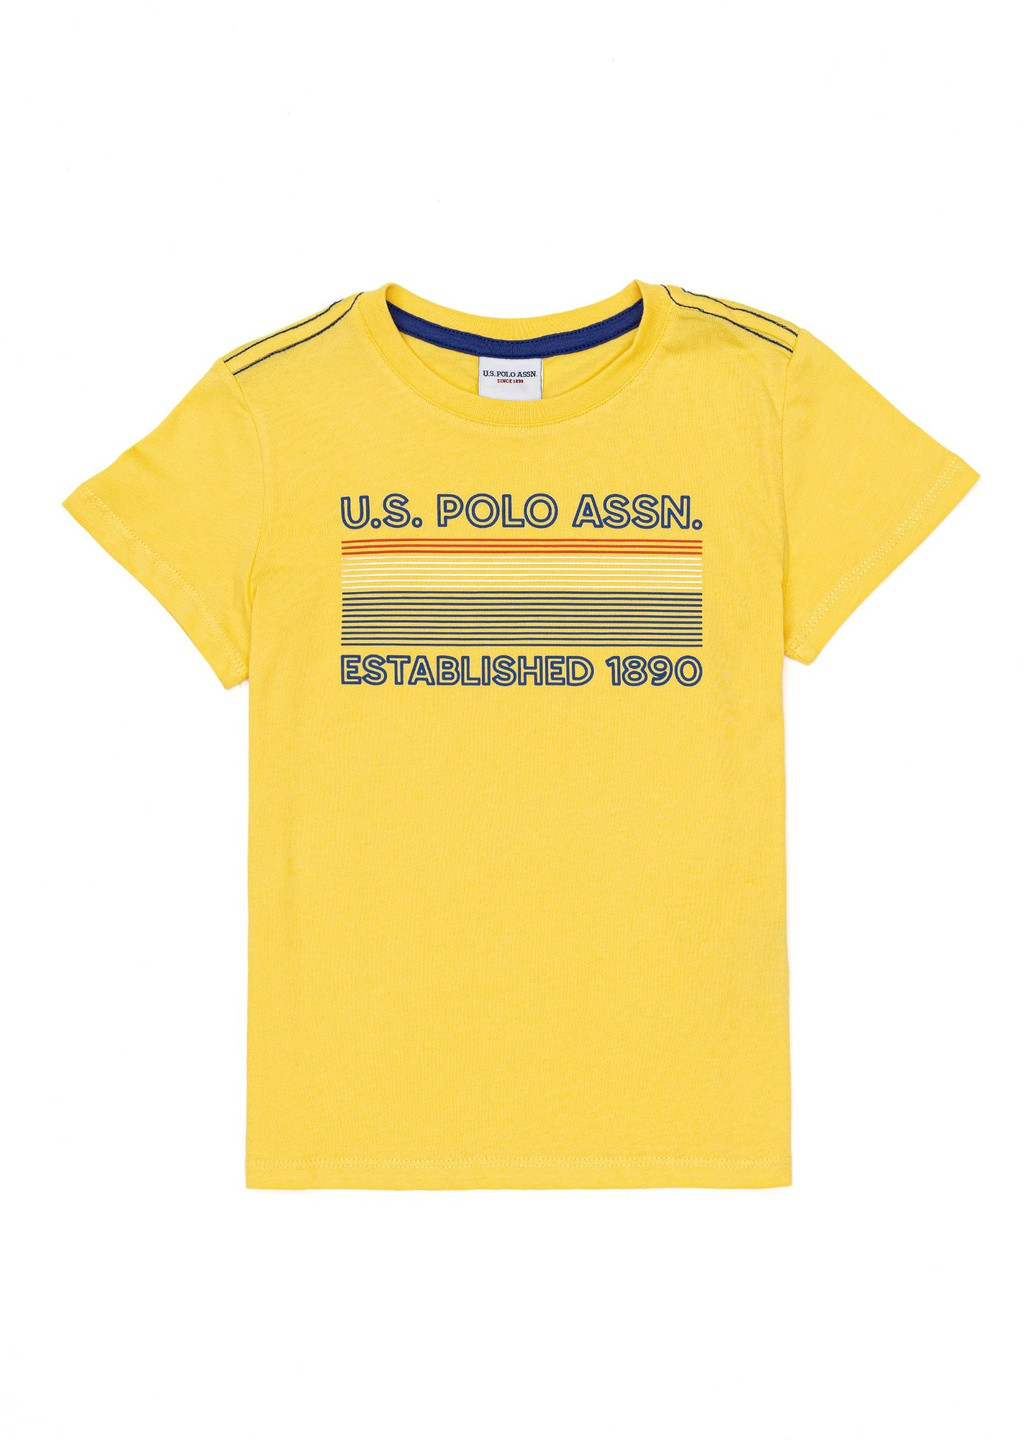 Светло-желтая детская футболка-футболка u.s/ polo assn. на мальчика для мальчика U.S. Polo Assn.